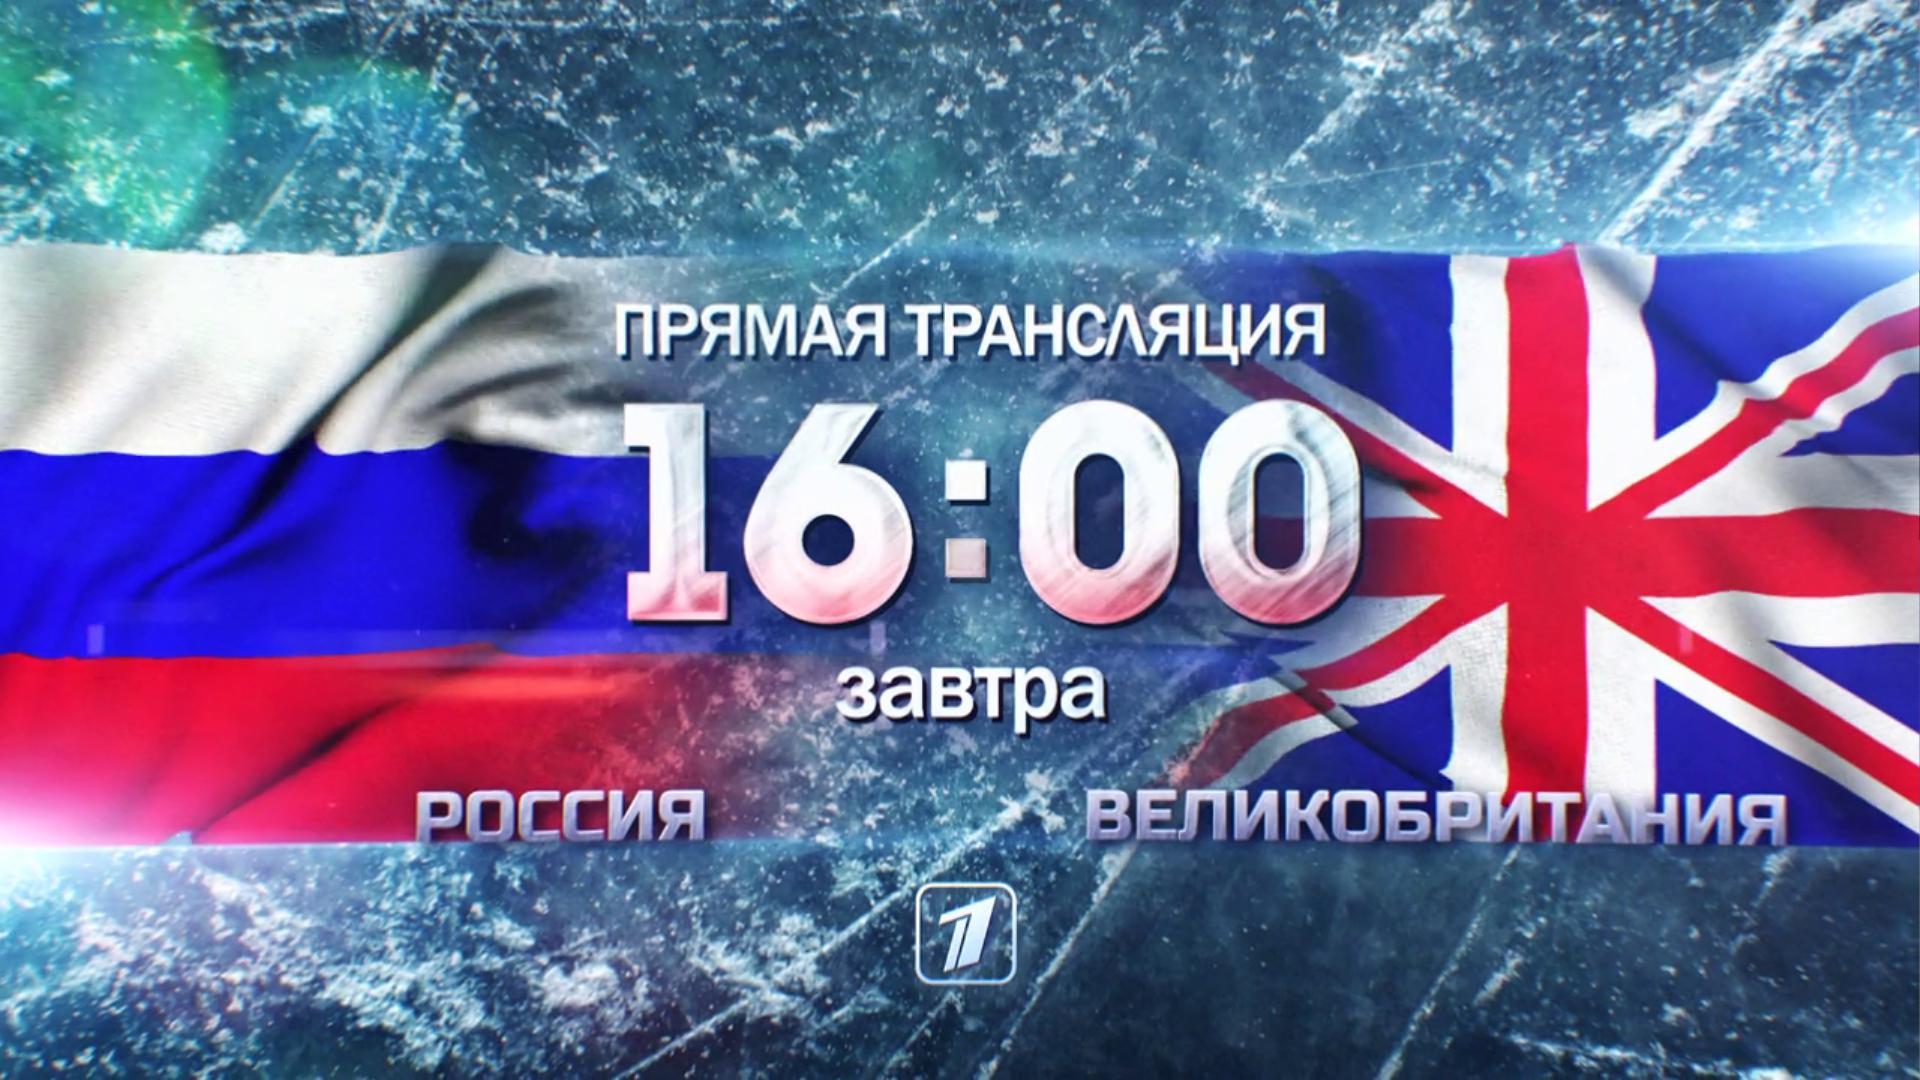 Чемпионат мира по хоккею 2021. Сборная России — сборная Великобритании. Прямой эфир из Латвии